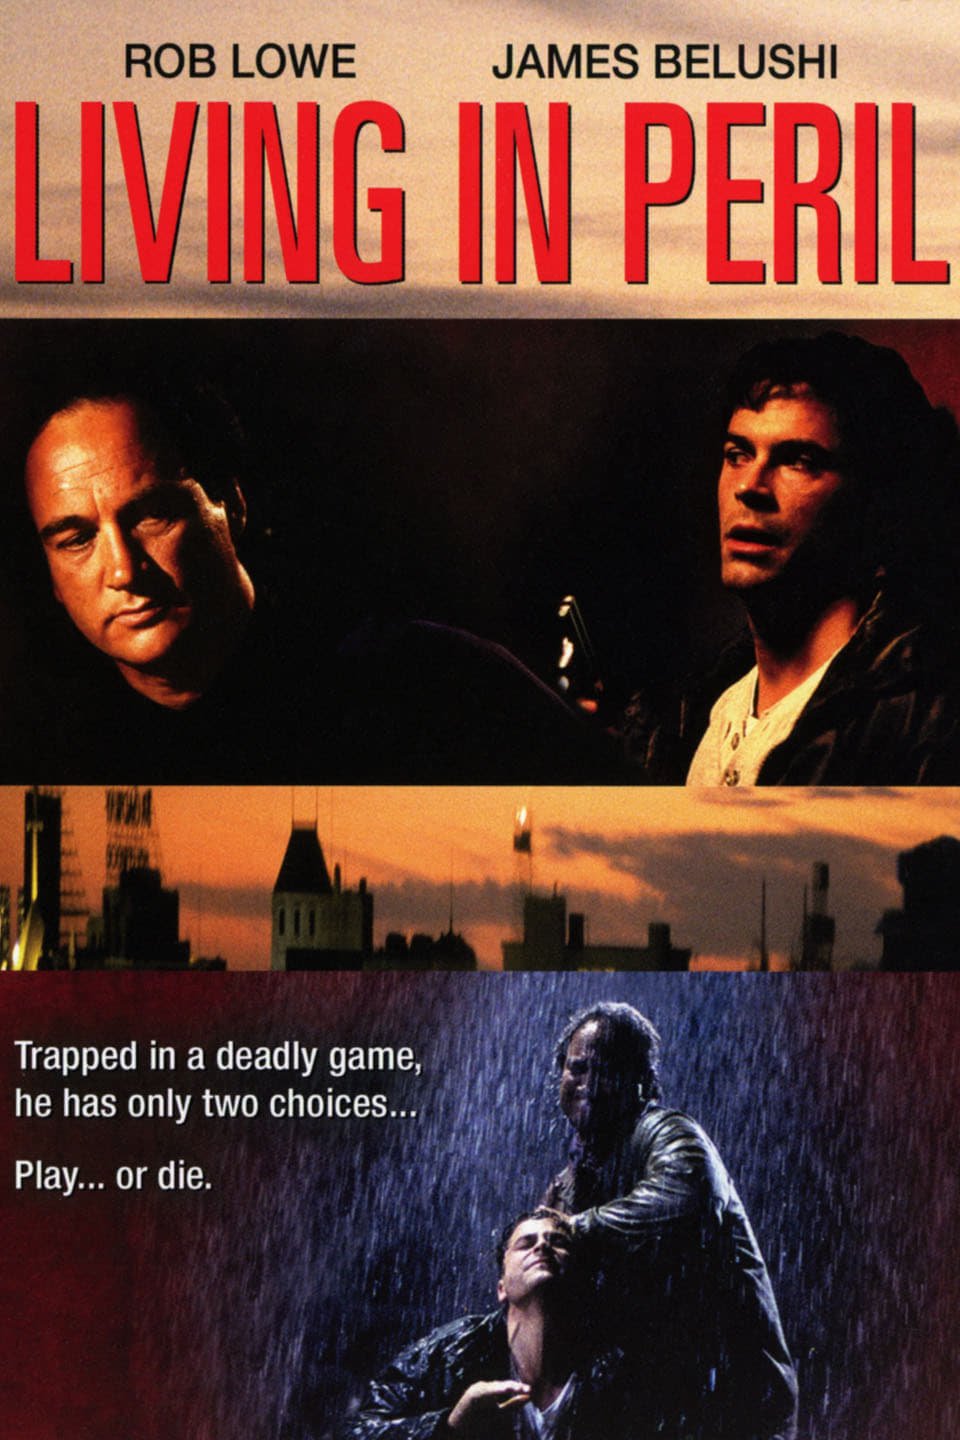 Living in Peril (1997)